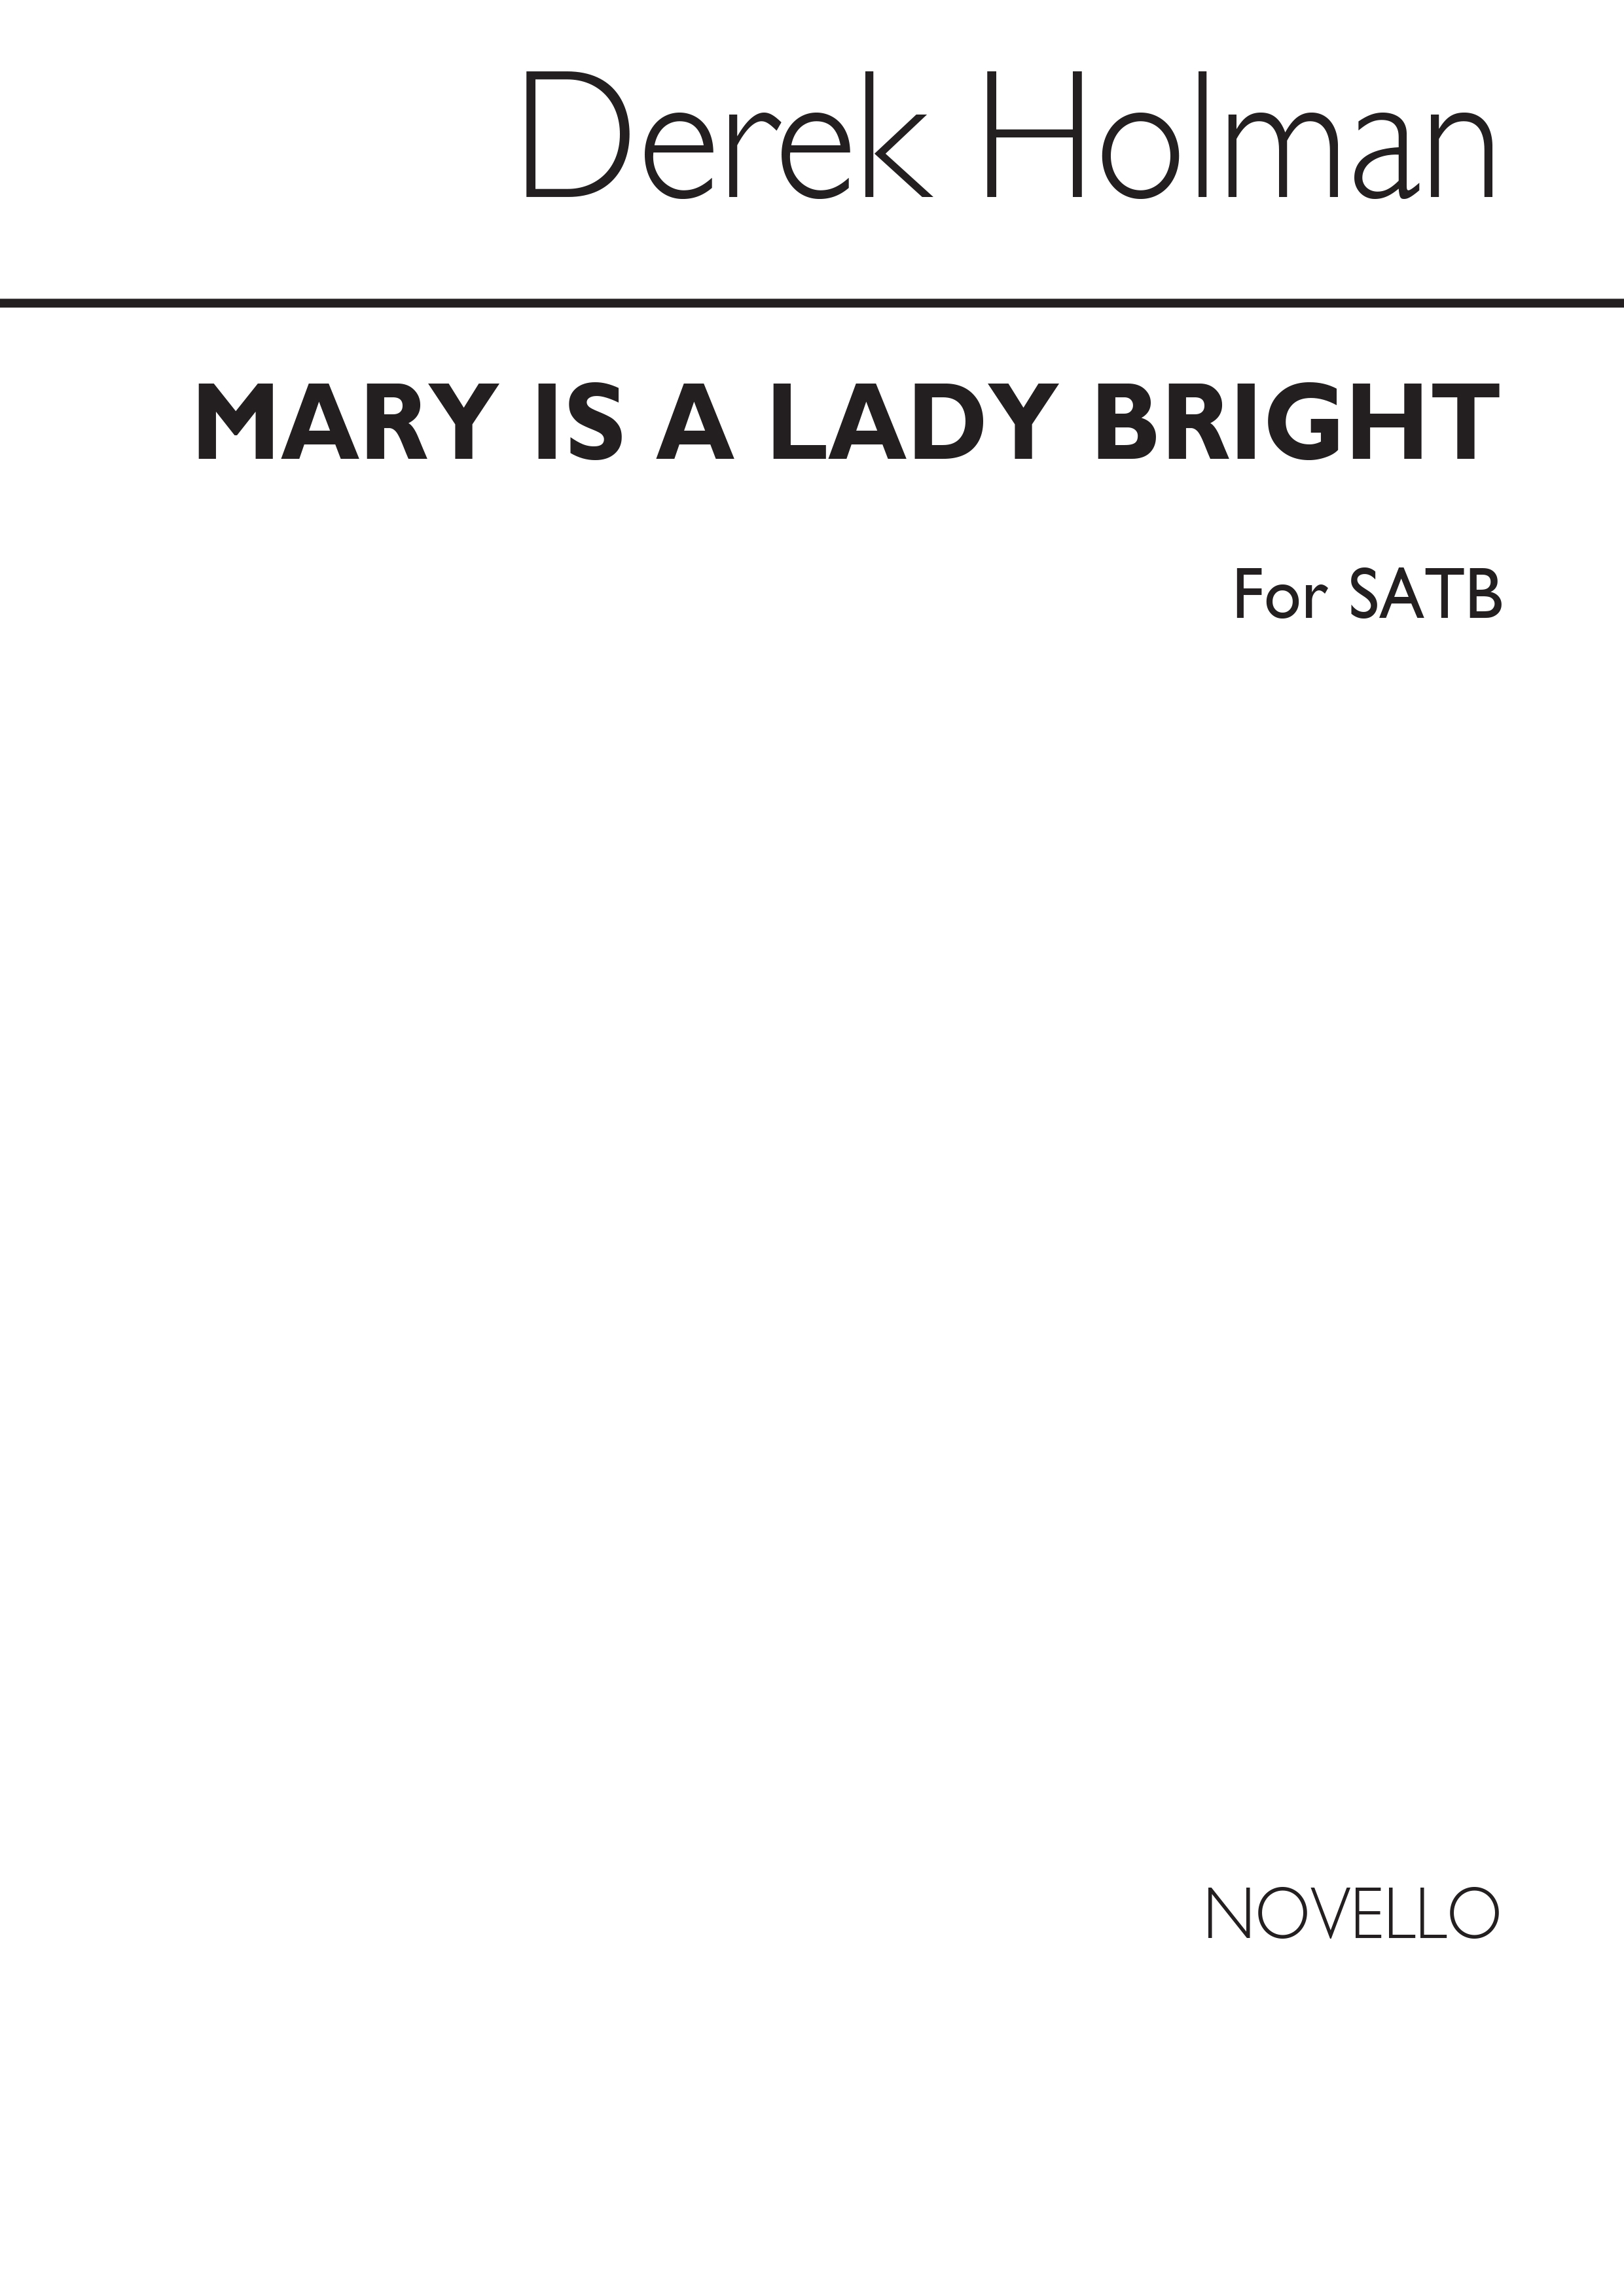 Derek Holman: Mary Is A Lady Bright (SATB Chorus)